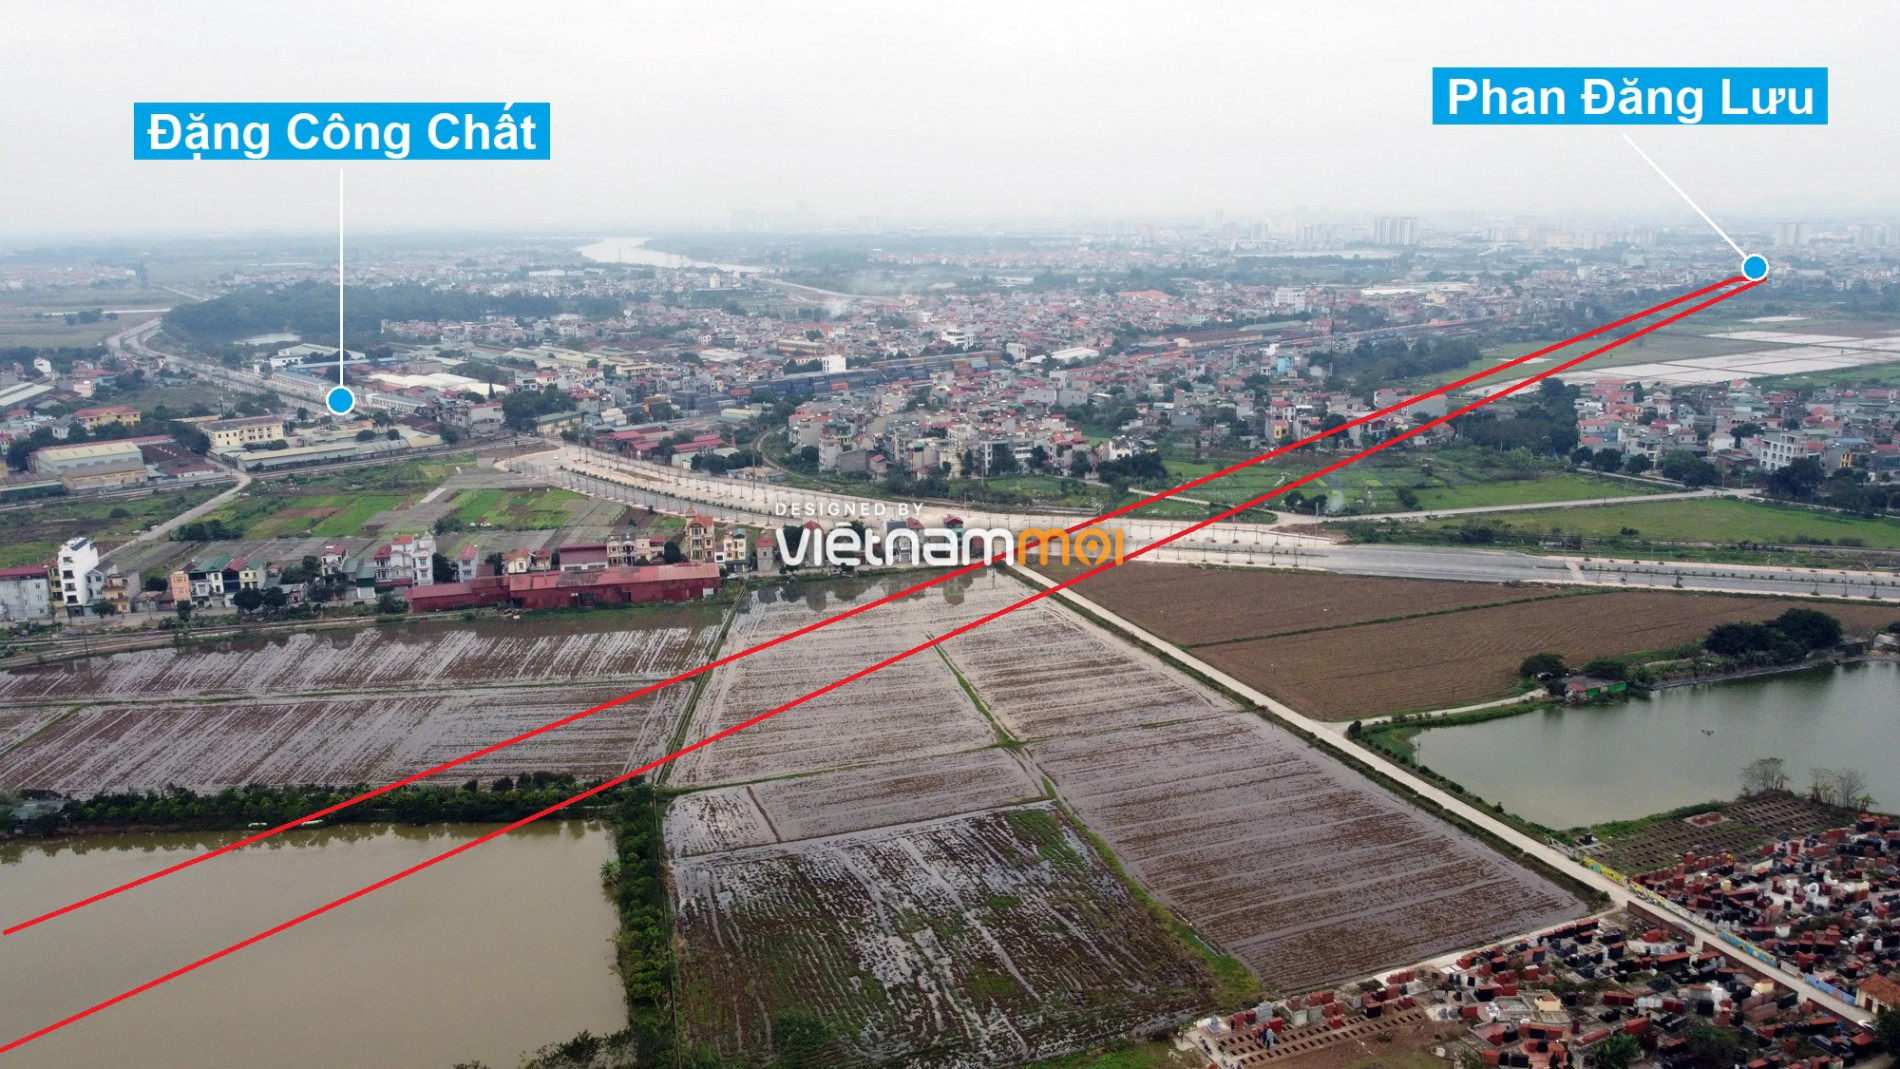 Những khu đất sắp thu hồi để mở đường ở huyện Gia Lâm, Hà Nội (phần 2) - Ảnh 5.